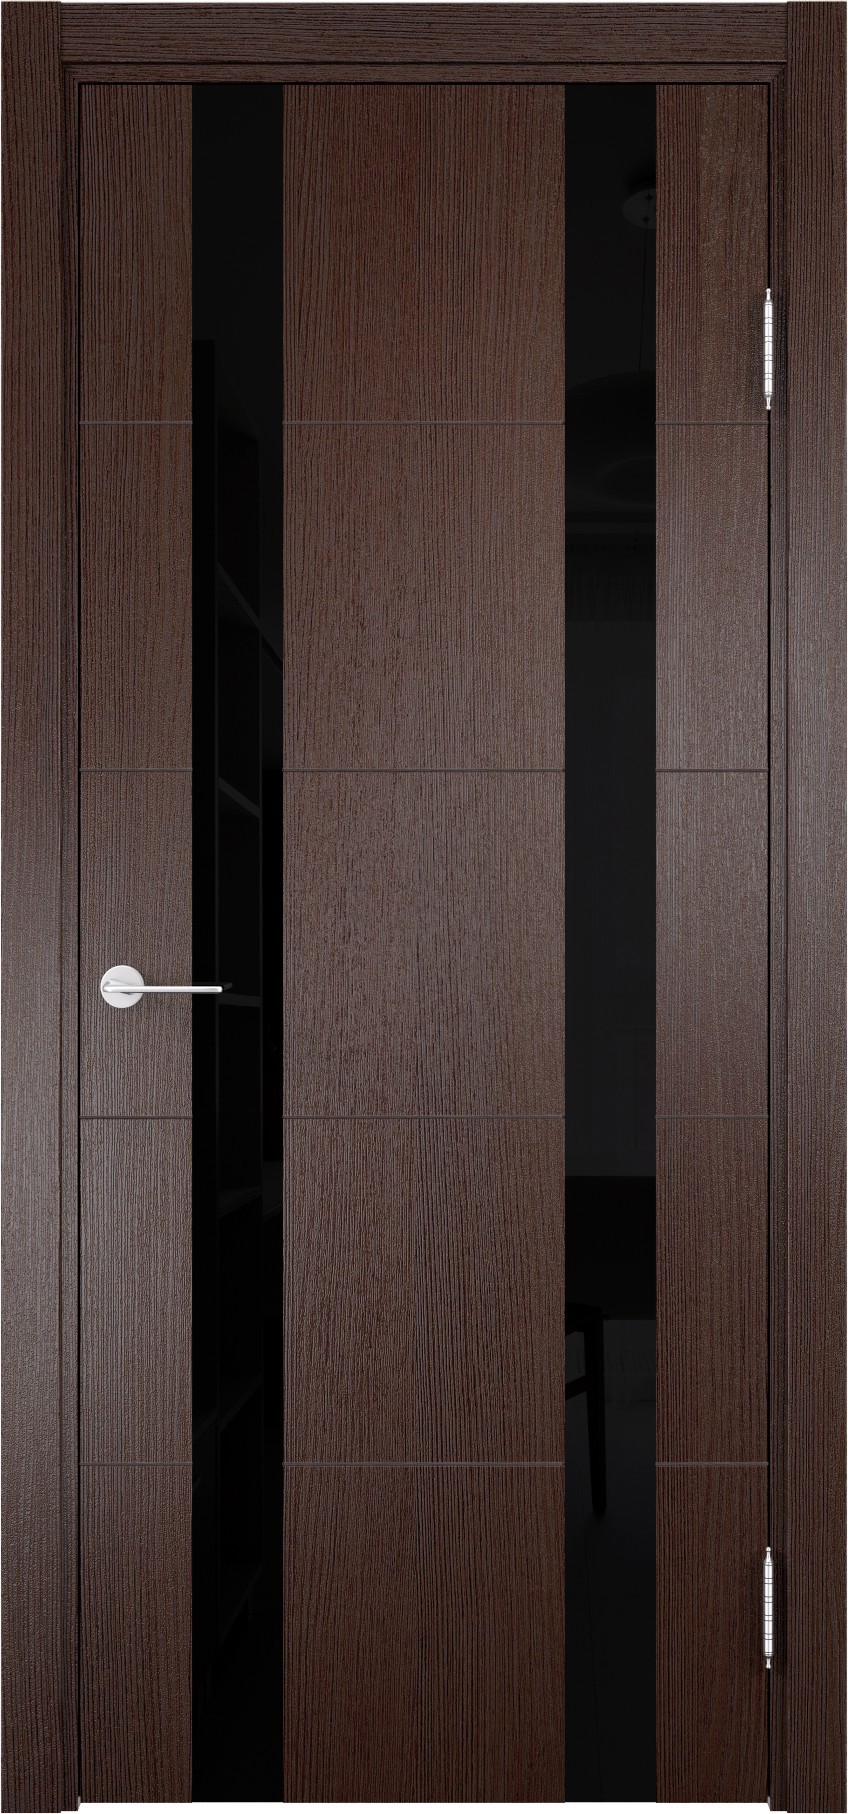 93718162 Дверь межкомнатная Турин (06) остекленная полипропилен цвет дуб графит вералинга 200 x 80 см STLM-0554438 CASAPORTE